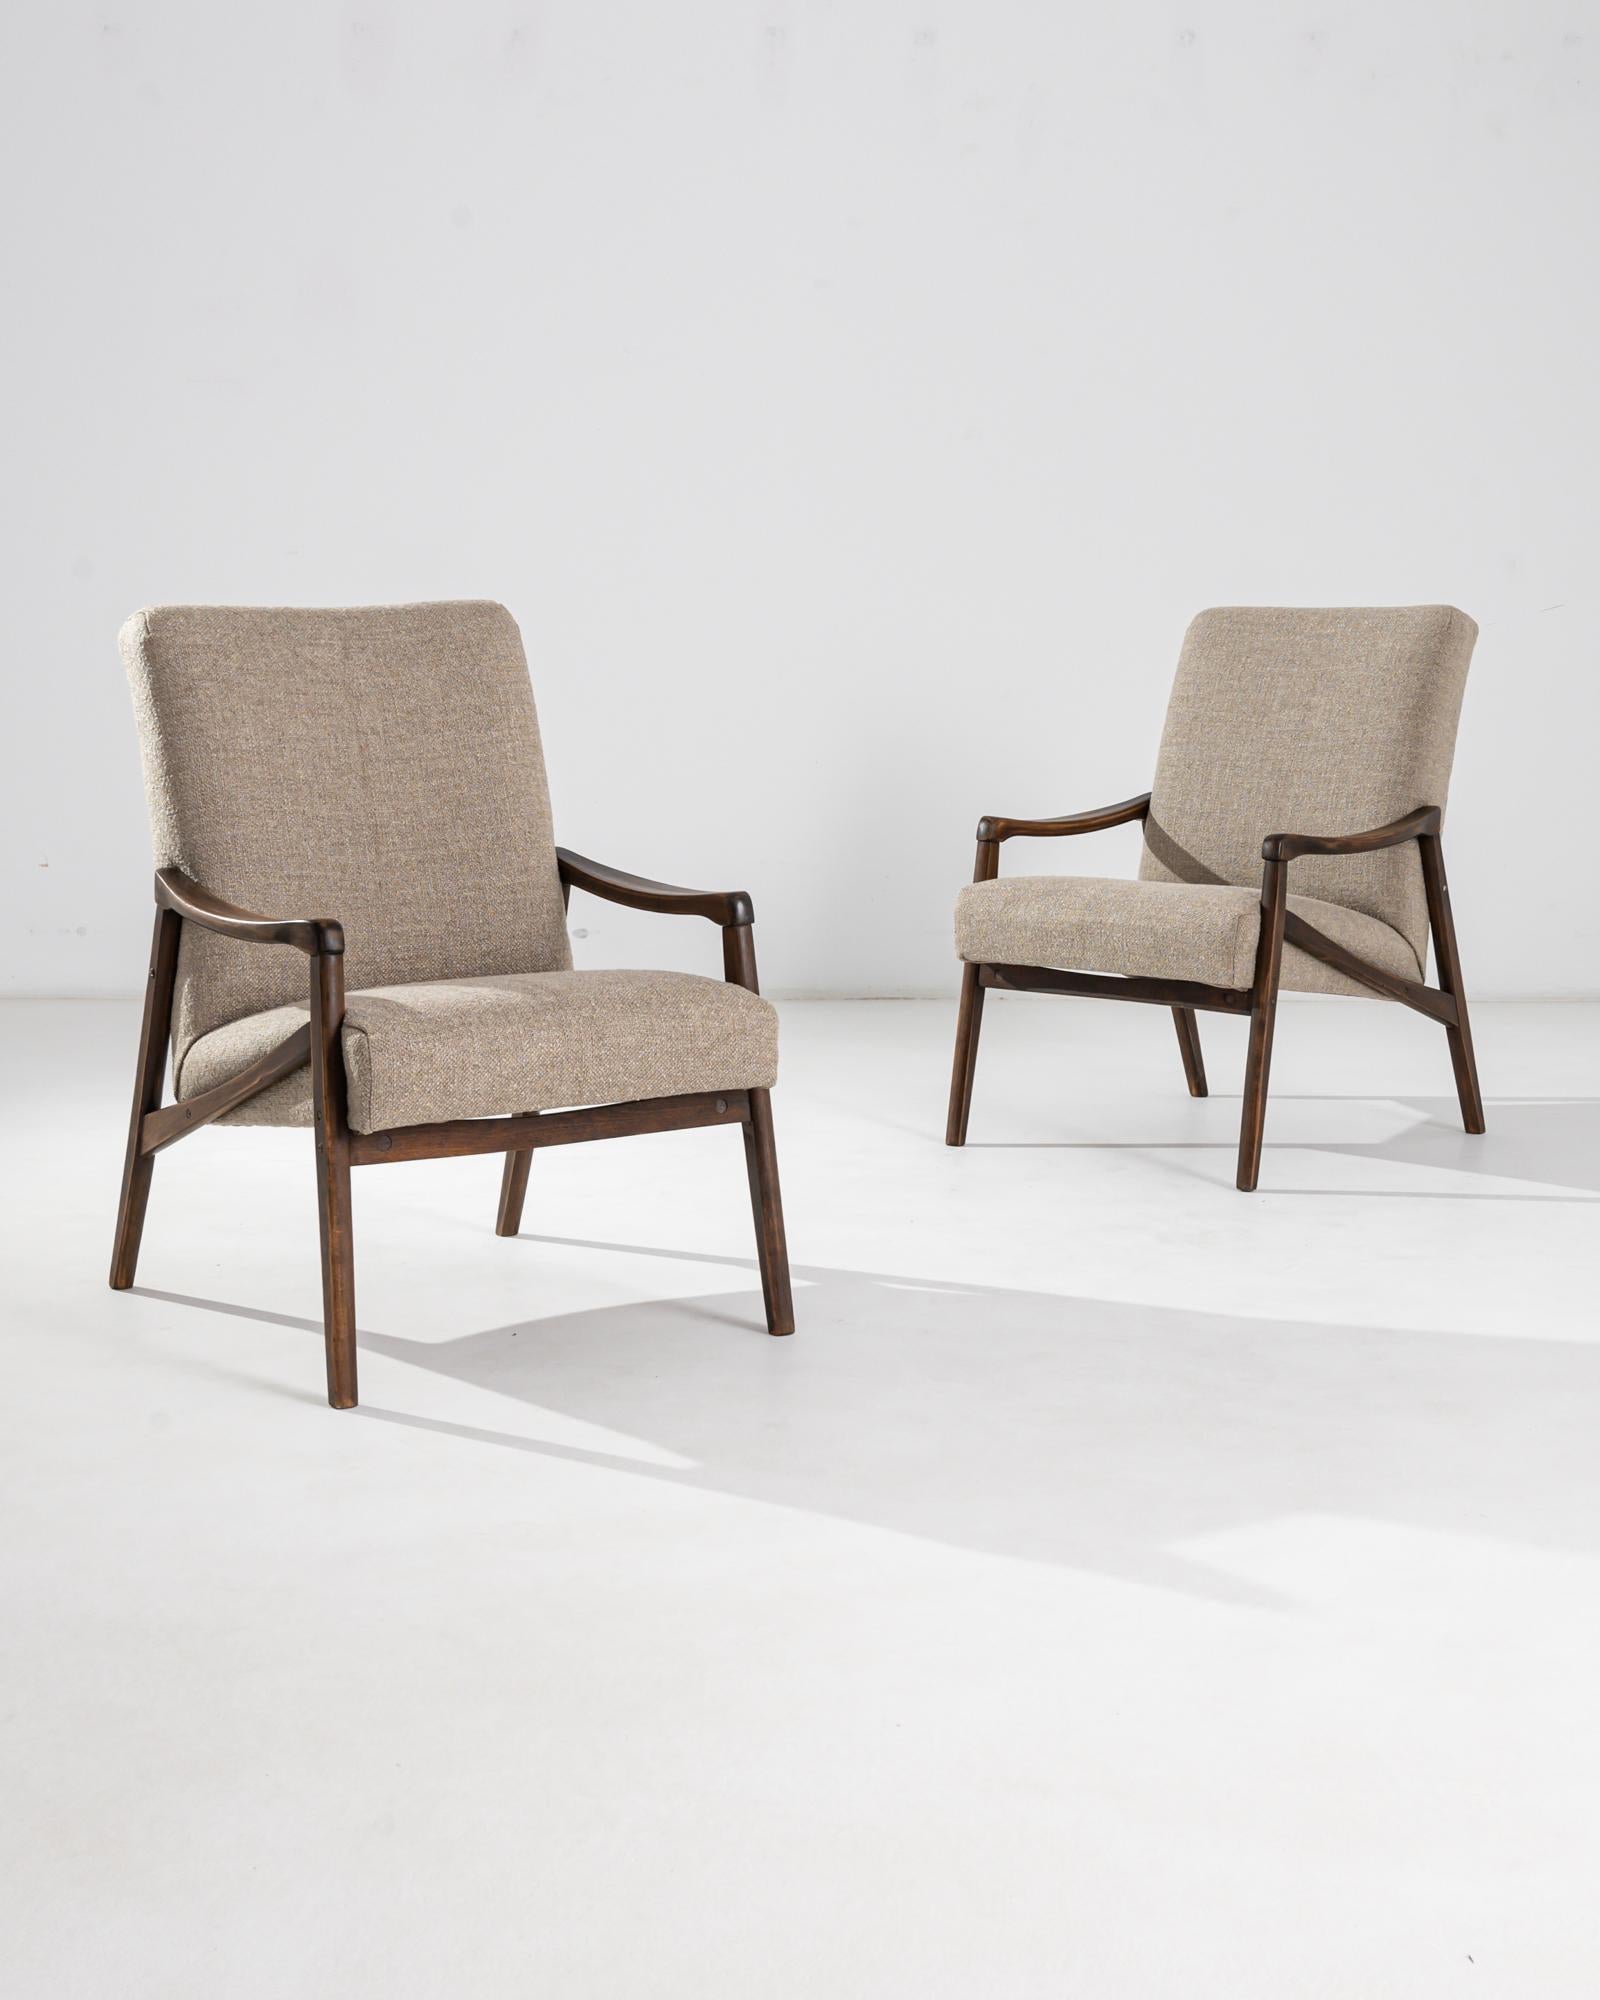 Une paire de fauteuils produits dans l'ancienne Tchécoslovaquie, dont le design est attribué à Jiri Jiroutek. Ce design des années 1960 a été retapissé en beige, un ton neutre qui s'harmonise avec la patine polie du cadre en bois dur. Angles